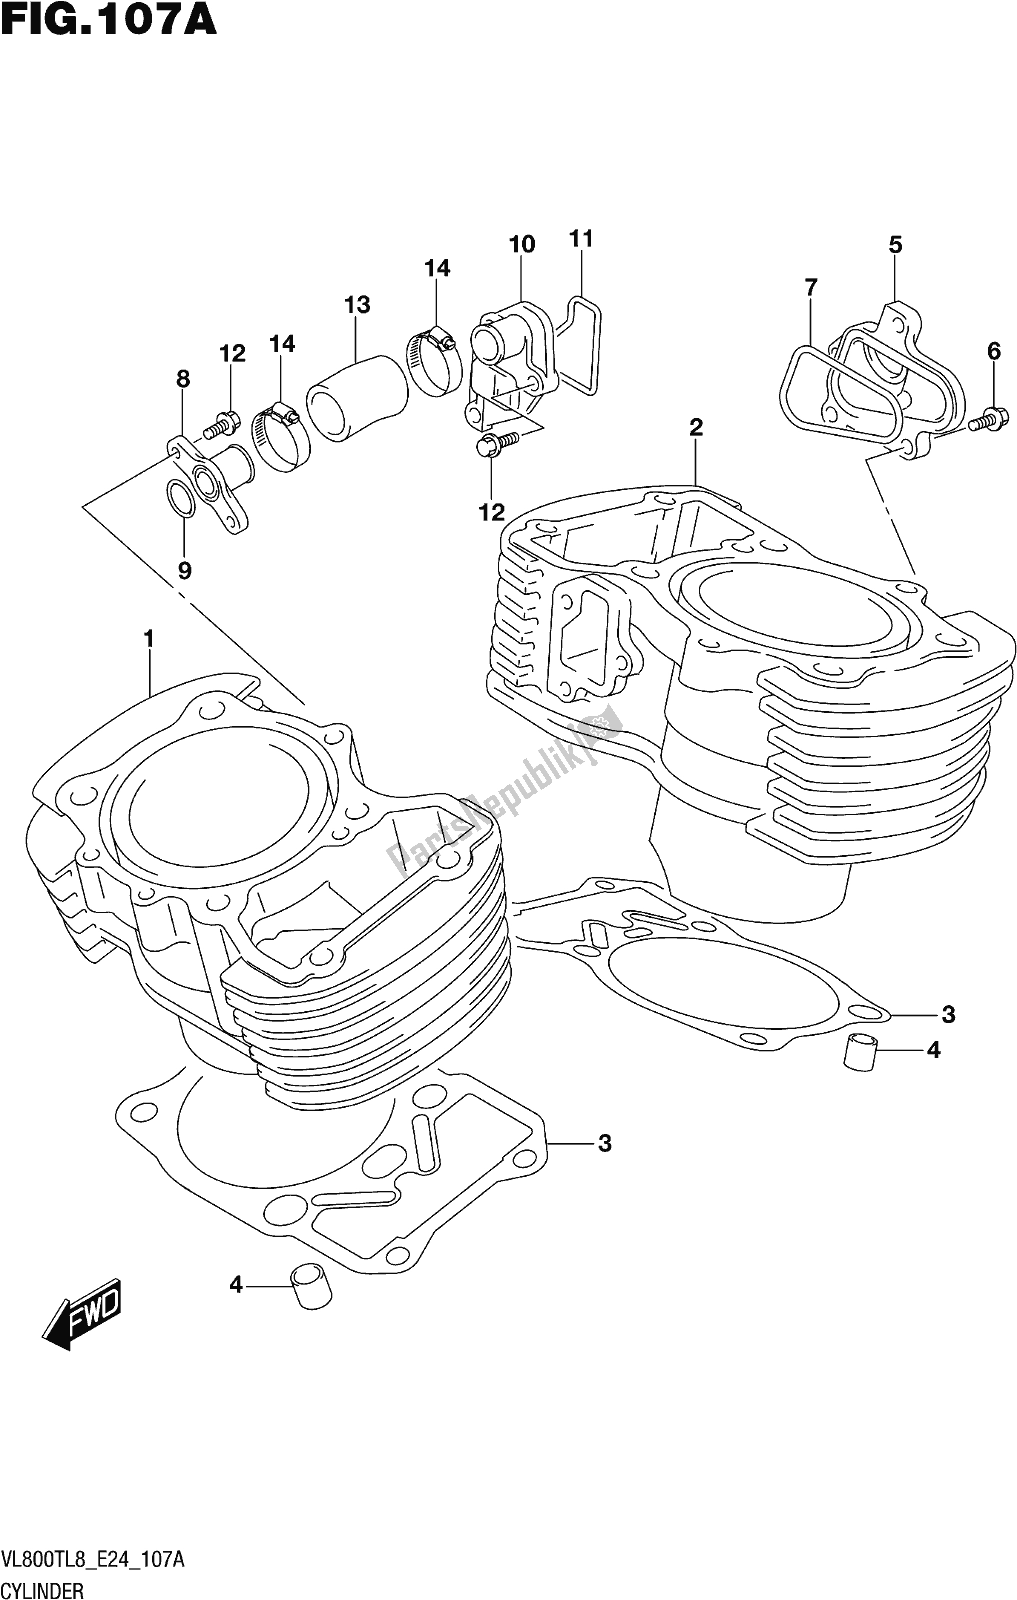 Alle onderdelen voor de Fig. 107a Cylinder van de Suzuki VL 800T 2018